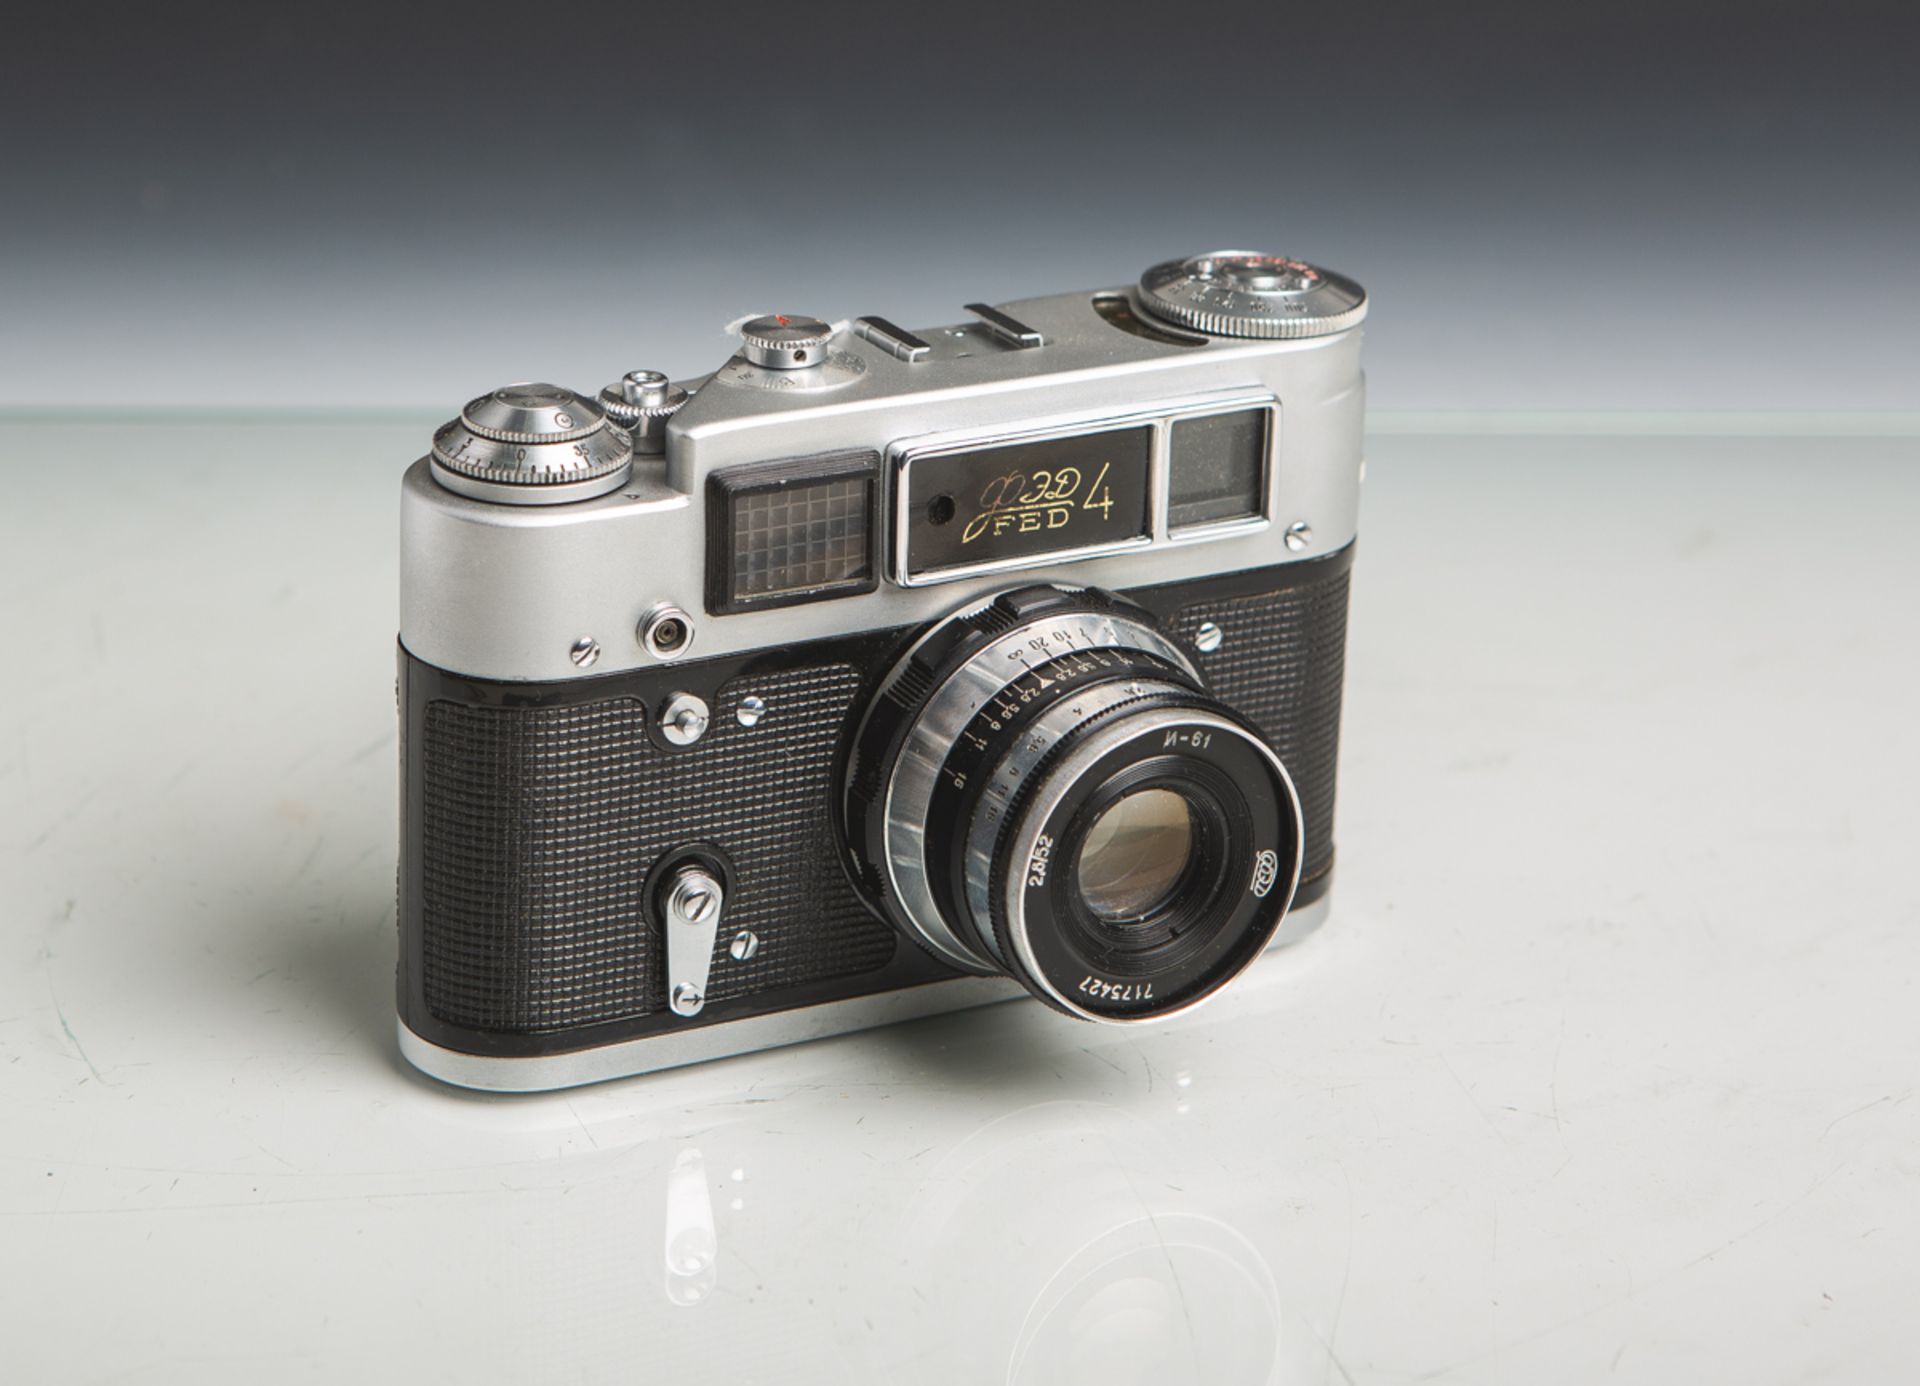 Kamera "FED 4" (Made in USSR, Baujahr 1964-80), Objektiv "I-61", 2,8/52, Nr. 7175427.